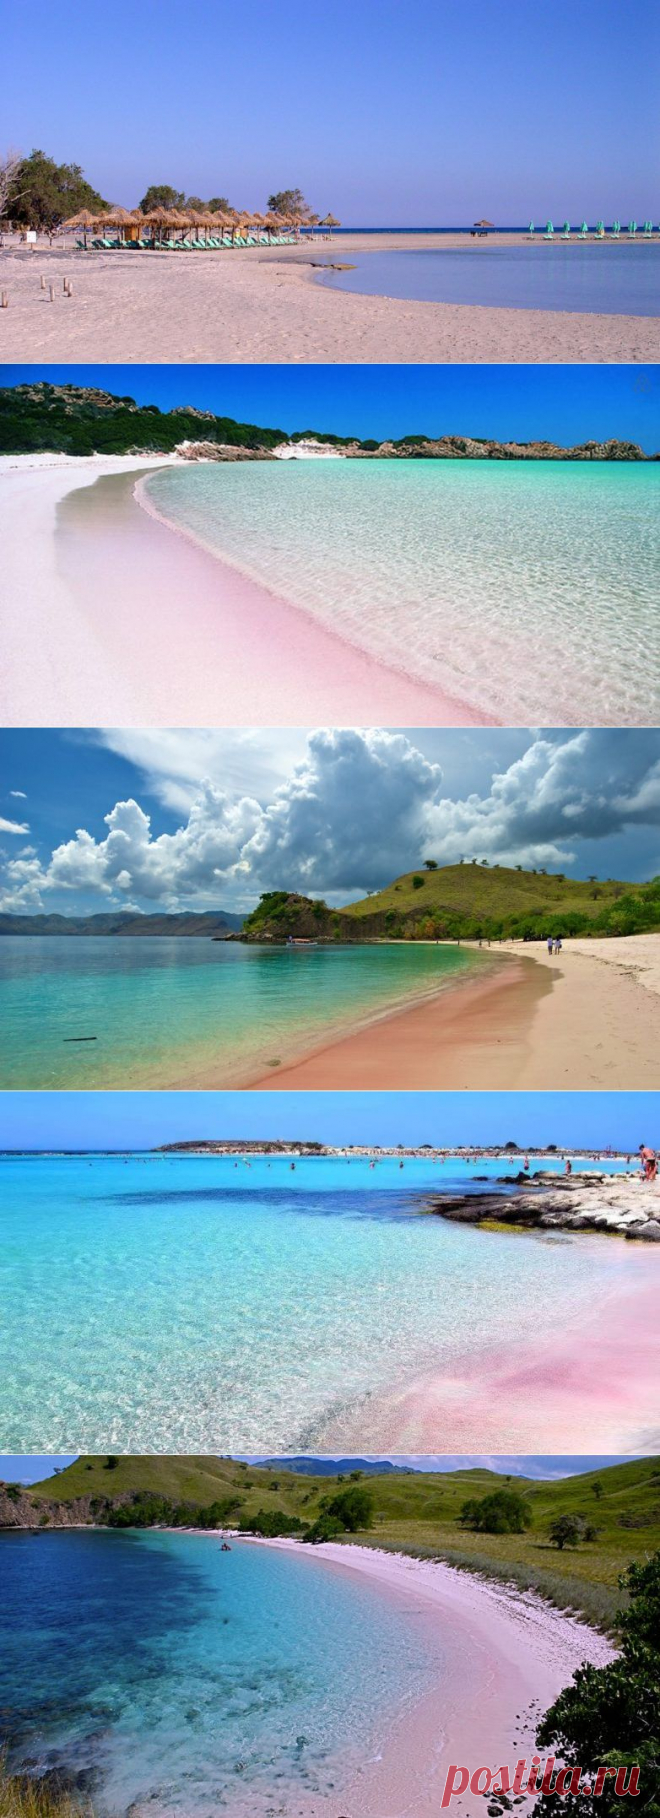 Обалденные розовые пляжи / Туристический спутник